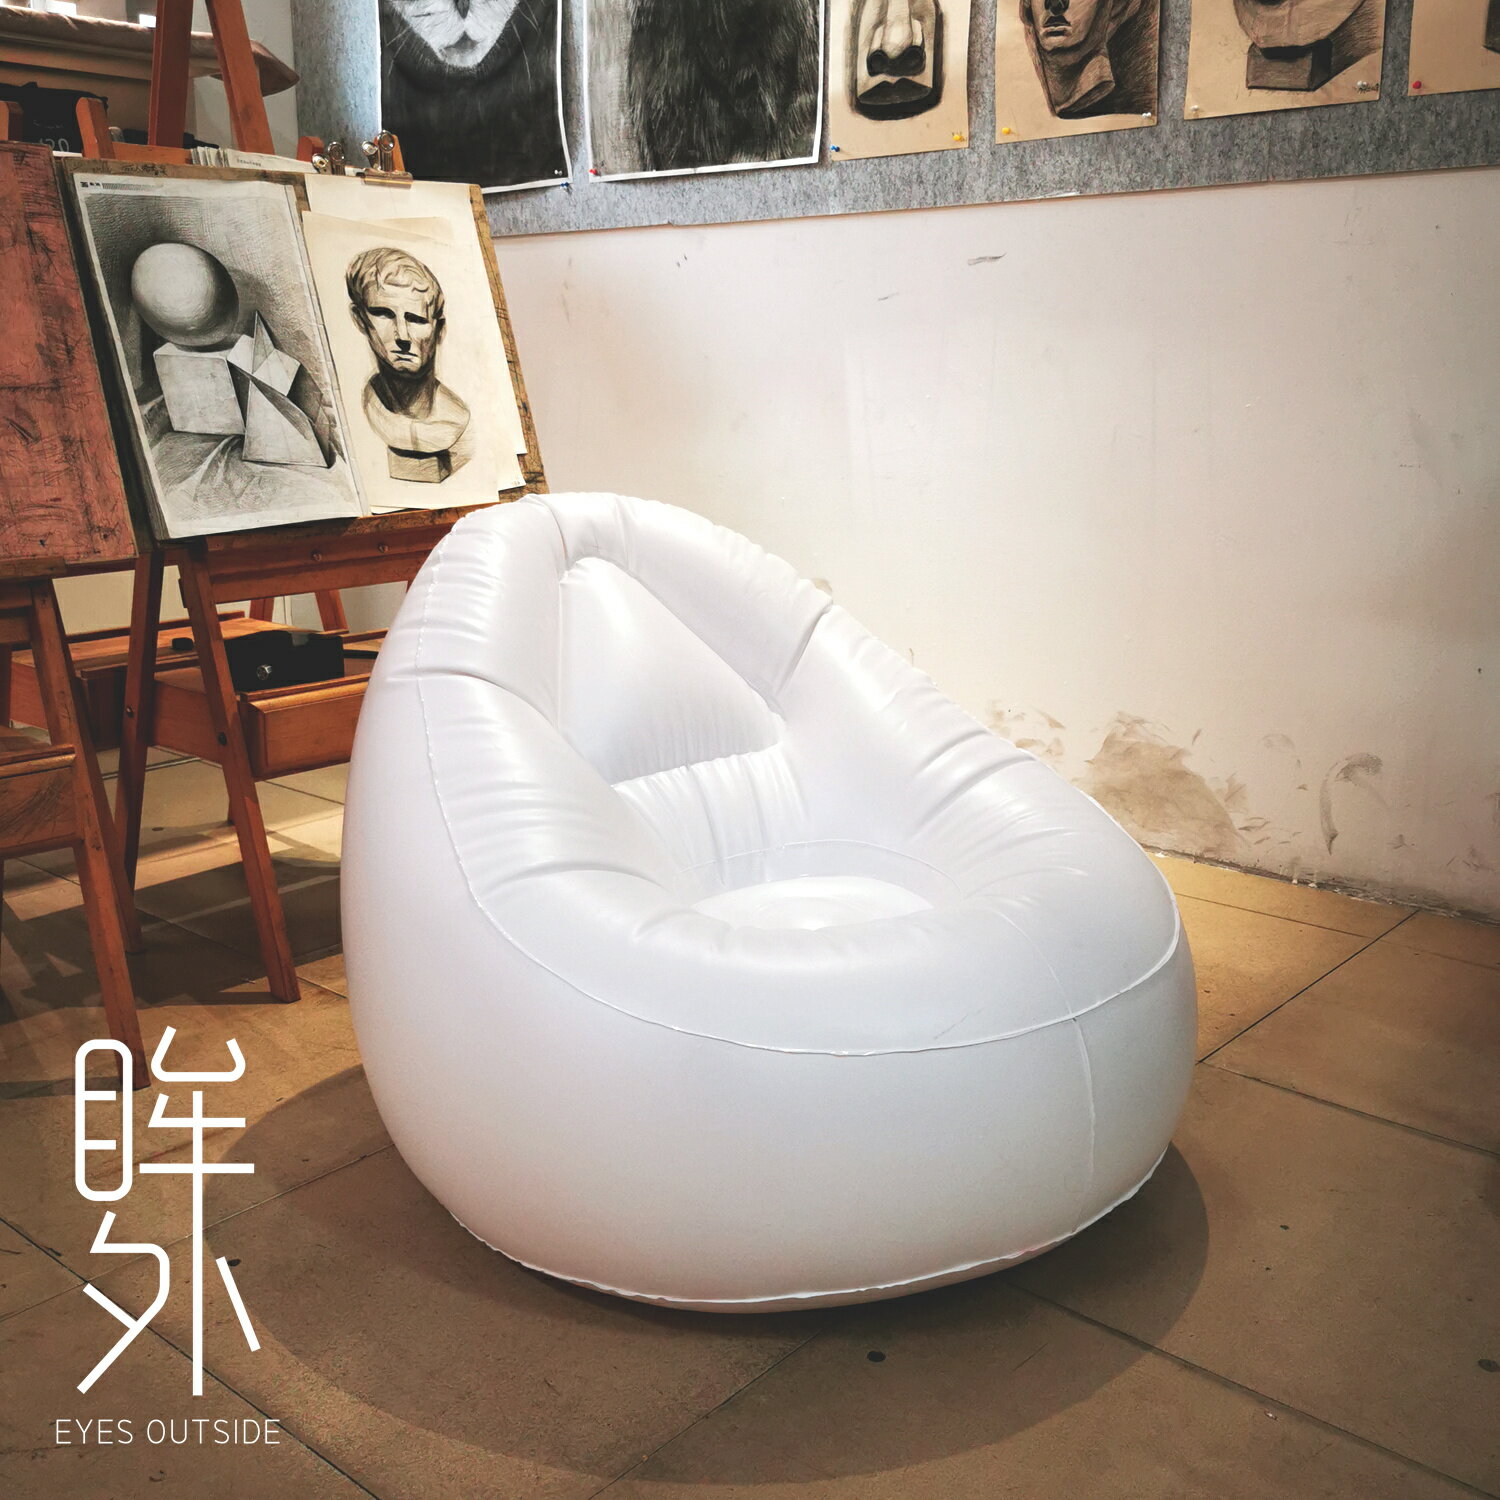 充氣床 充氣沙發 露營床墊 充氣沙發大人兒童大師設計簡約現代藝術休閒家具充氣懶人躺椅『ZW8669』